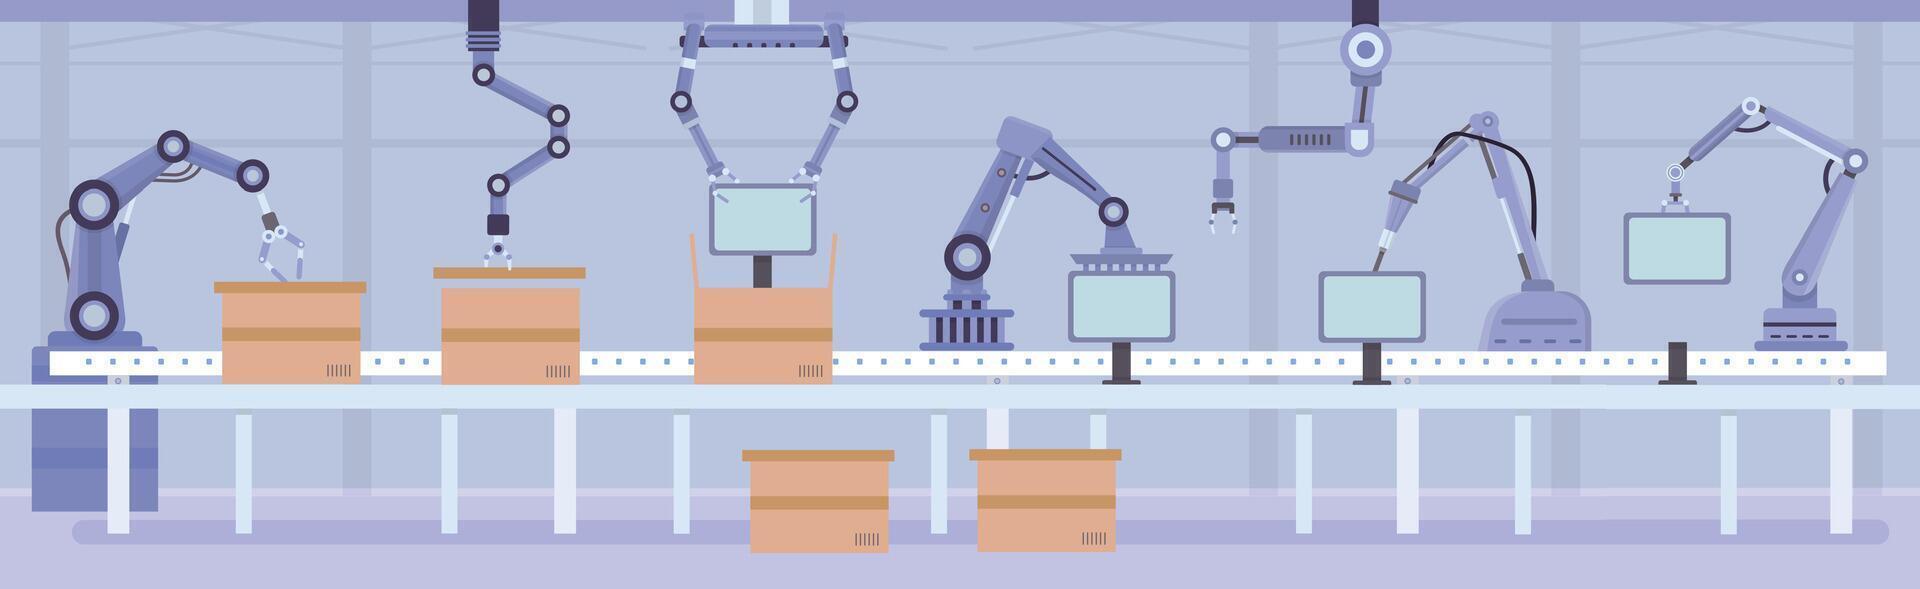 plano automatizado robô braços em fábrica montagem linha. fabricação transportador com produtos e caixas. indústria automação máquina vetor conceito